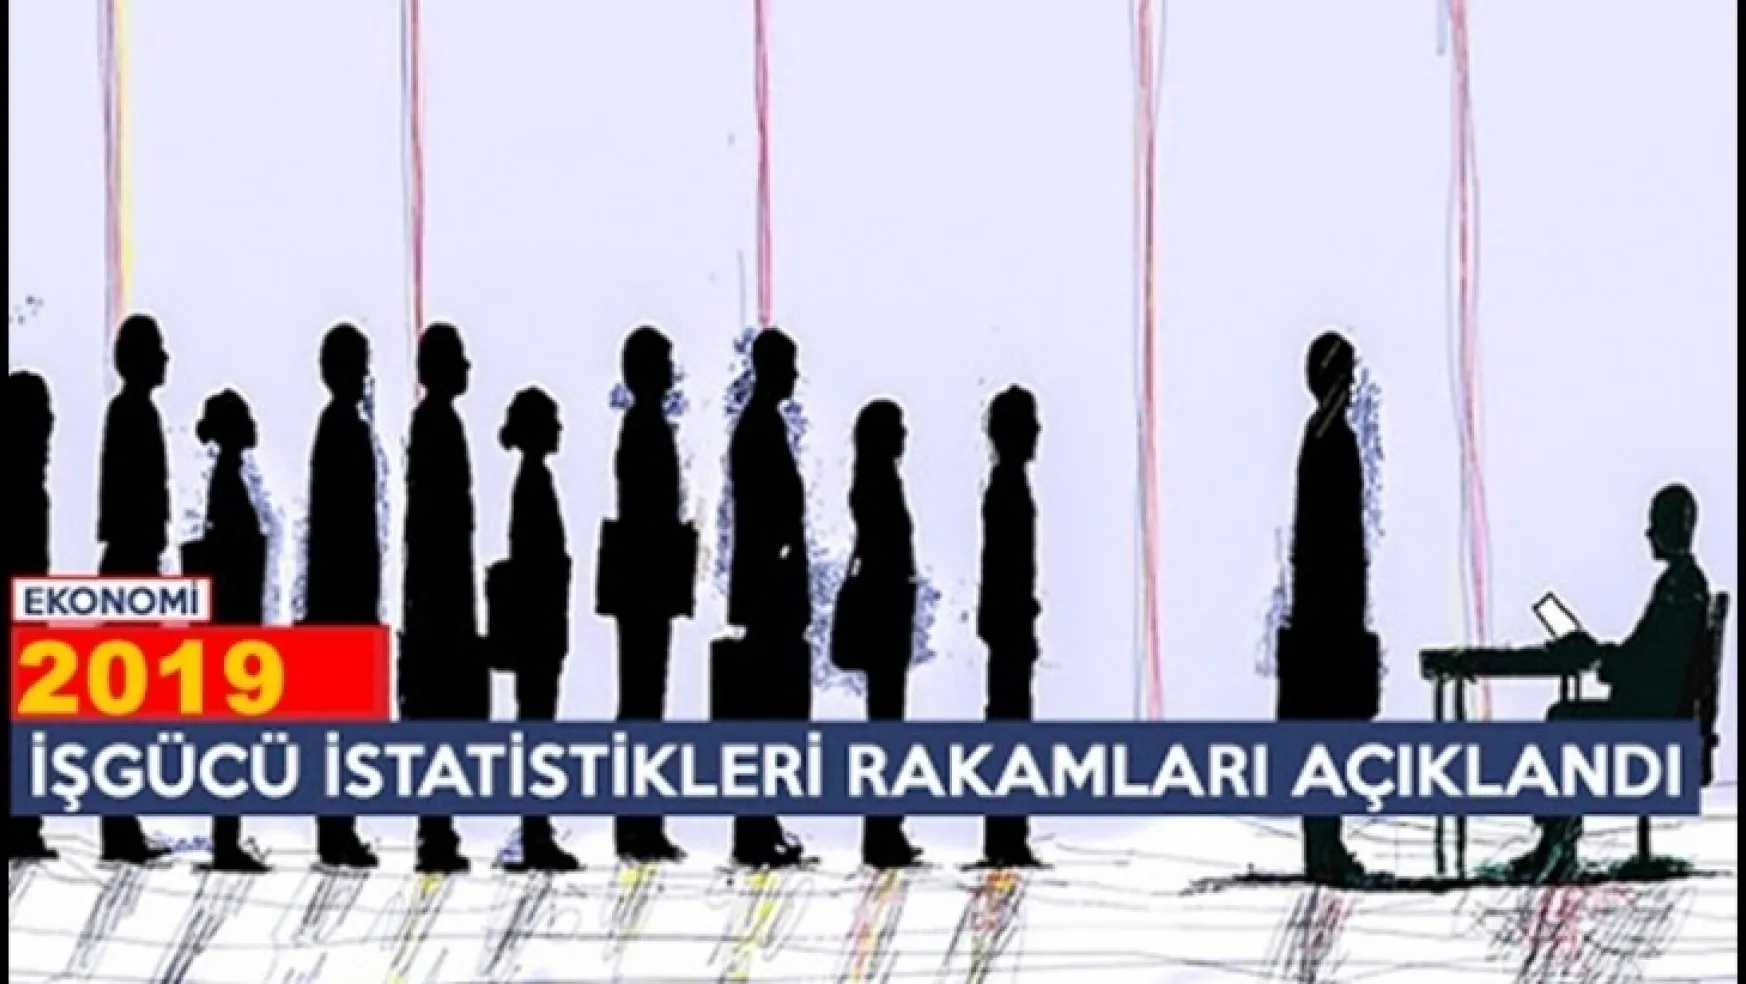 İşsizlik oranı en yüksek bölge (Mardin, Batman, Şırnak, Siirt) oldu